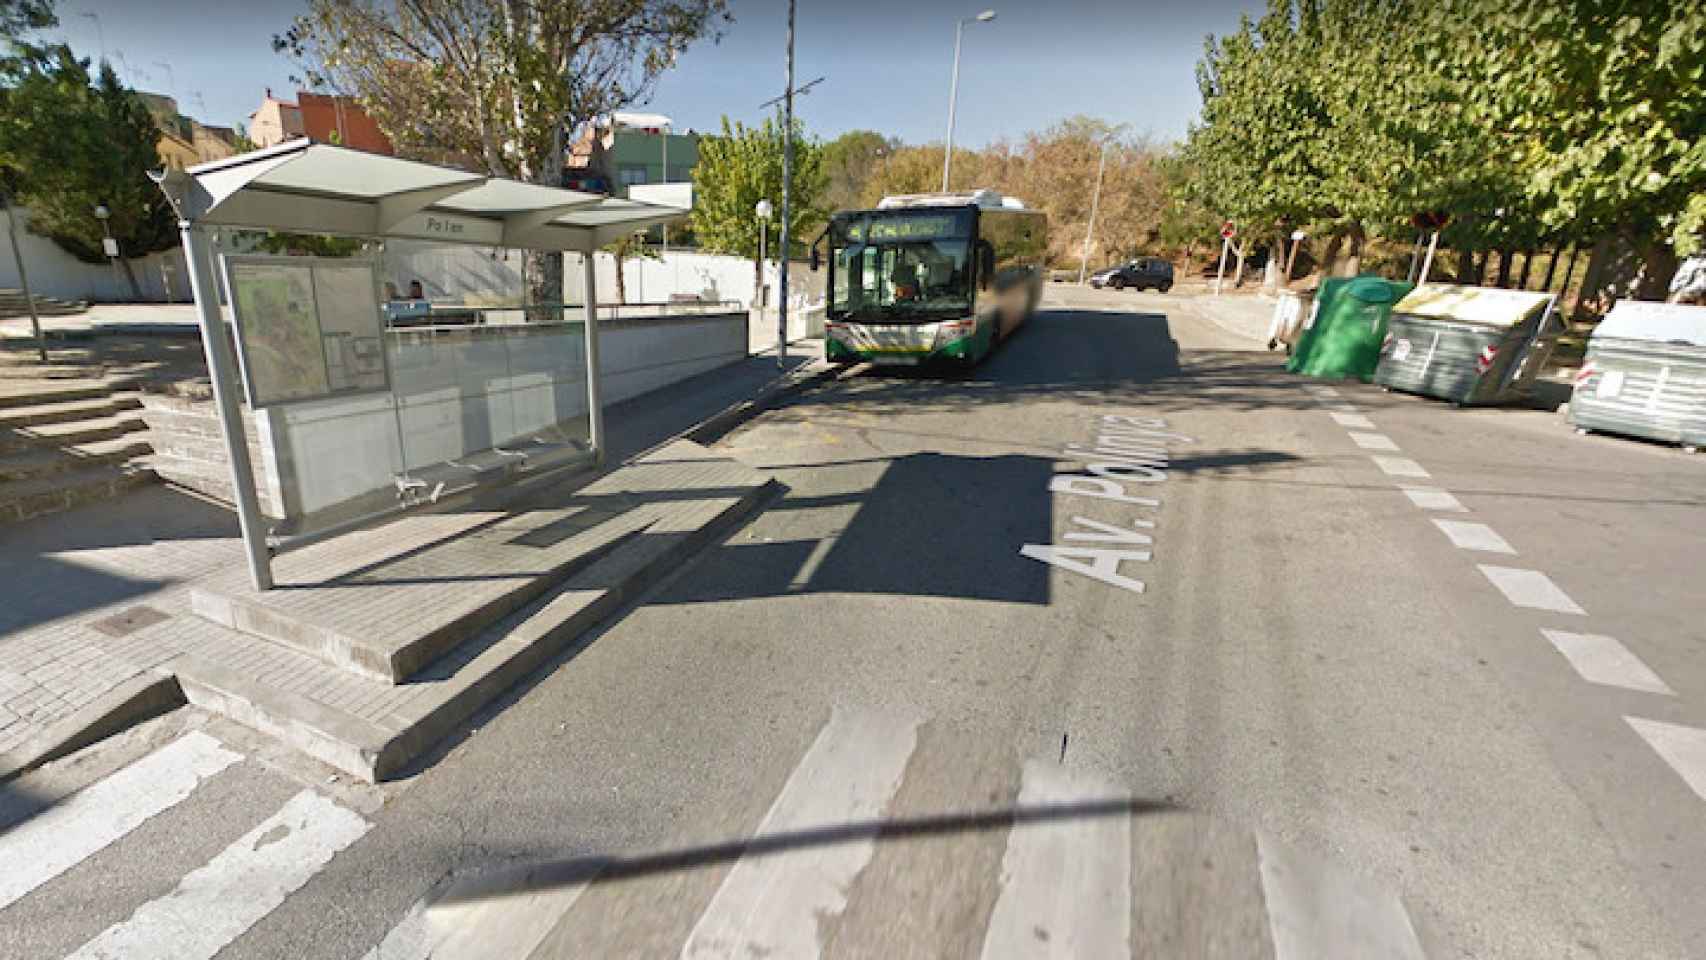 Av. Polinyà, donde se produjo el accidente en Sabadell / GOOGLE MAPS